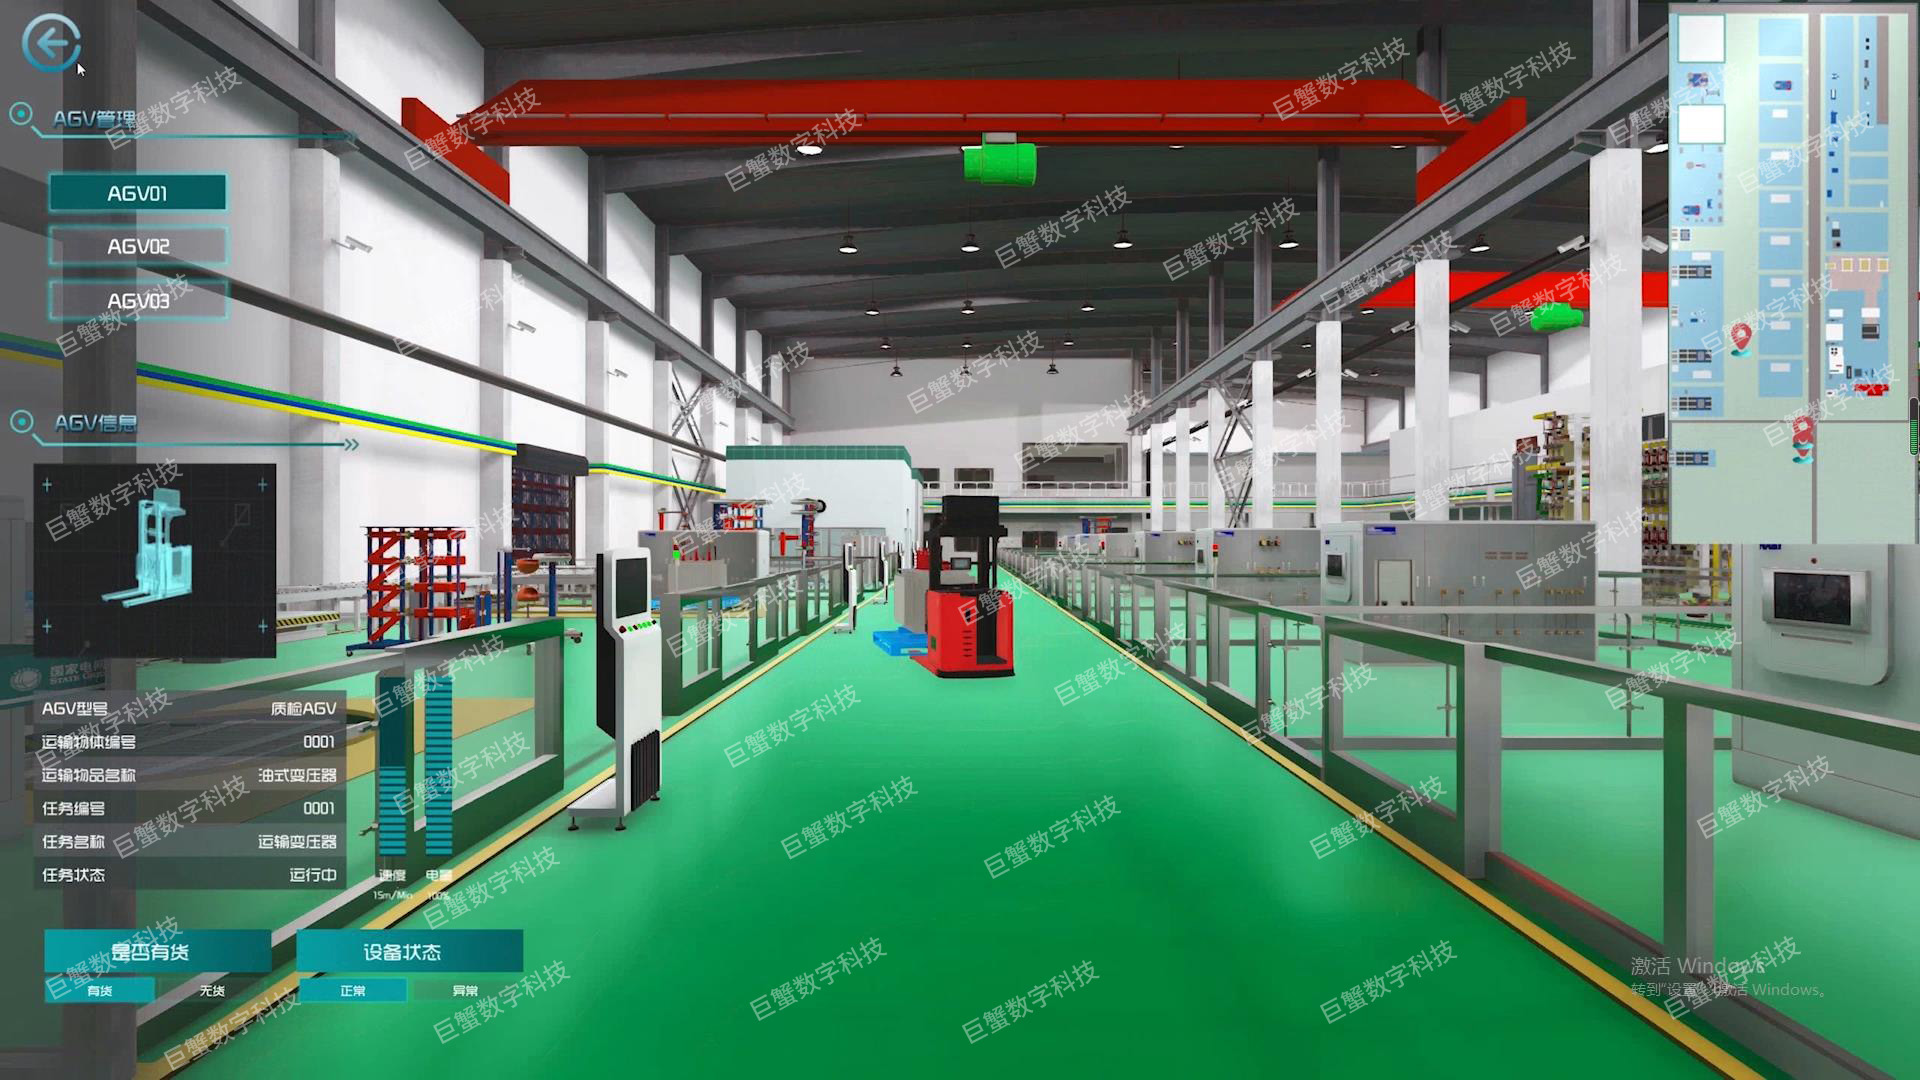 上海高校大学数字孪生教学实验室,虚拟仿真实训系统中心,数字孪生校园场景建设方案